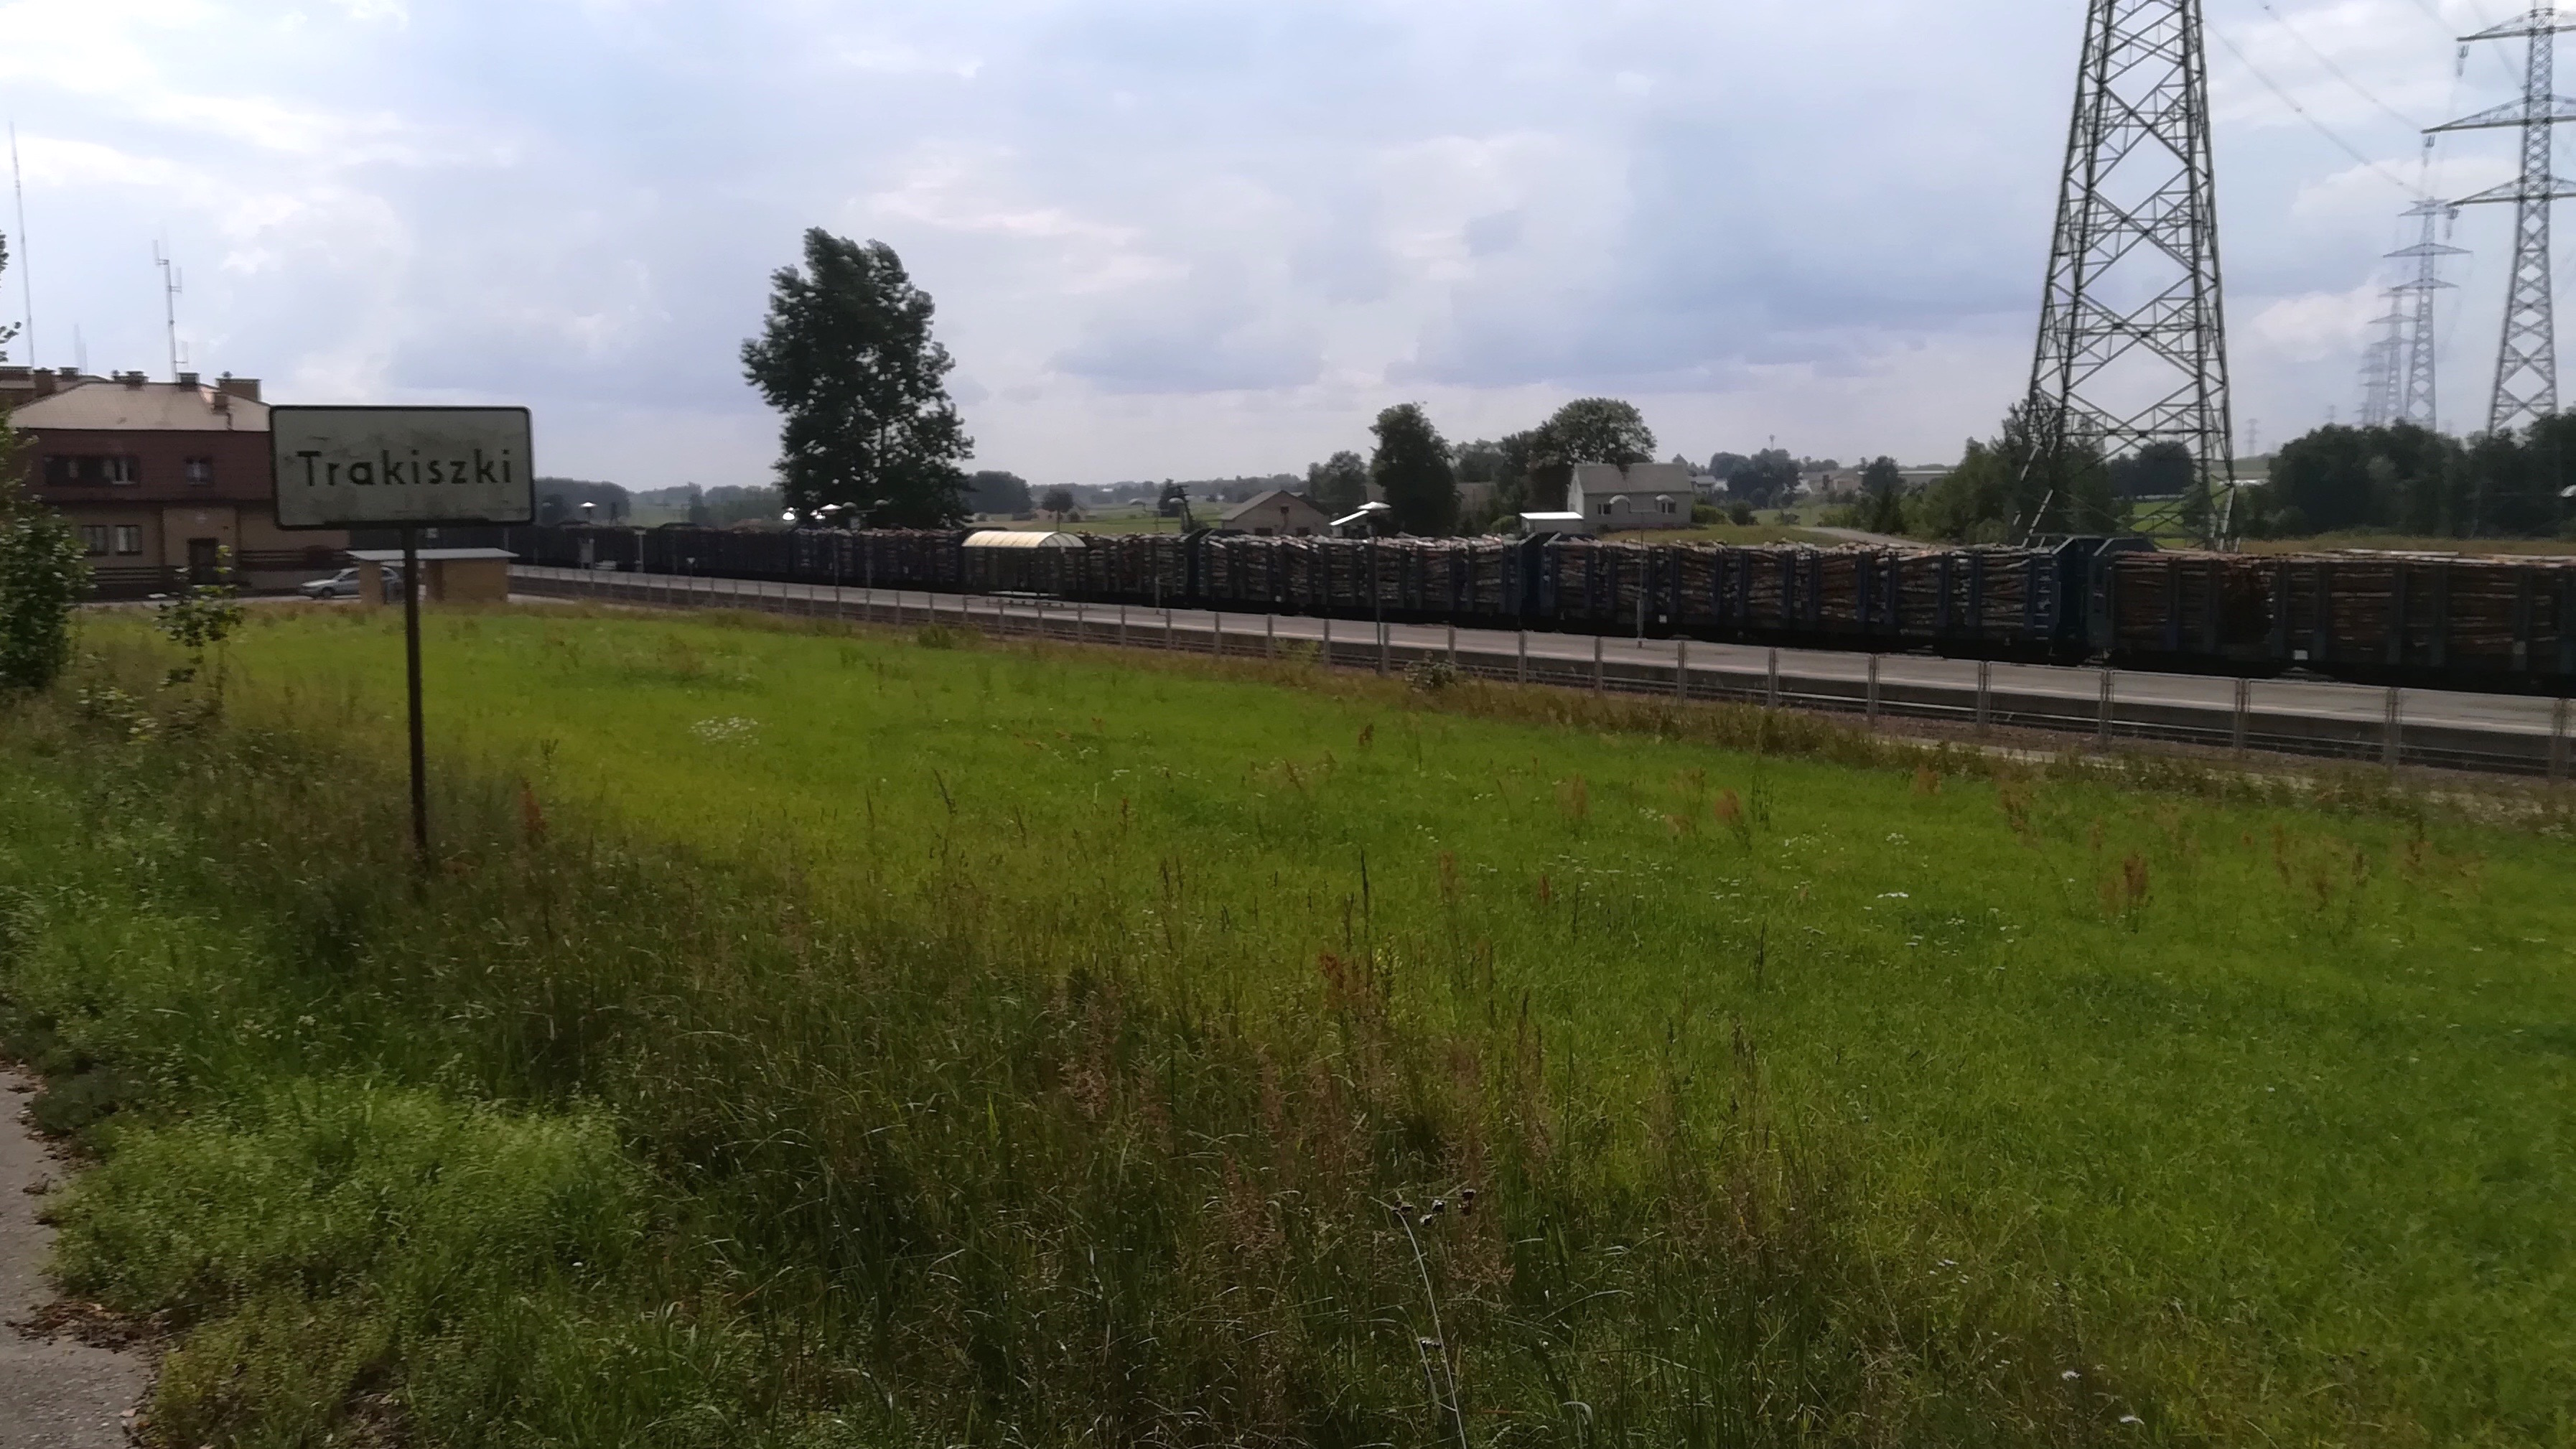 Stacja kolejowa w Trakiszkach przy granicy z Litwą. Fot. Rafał Lesiecki / Defence24.pl